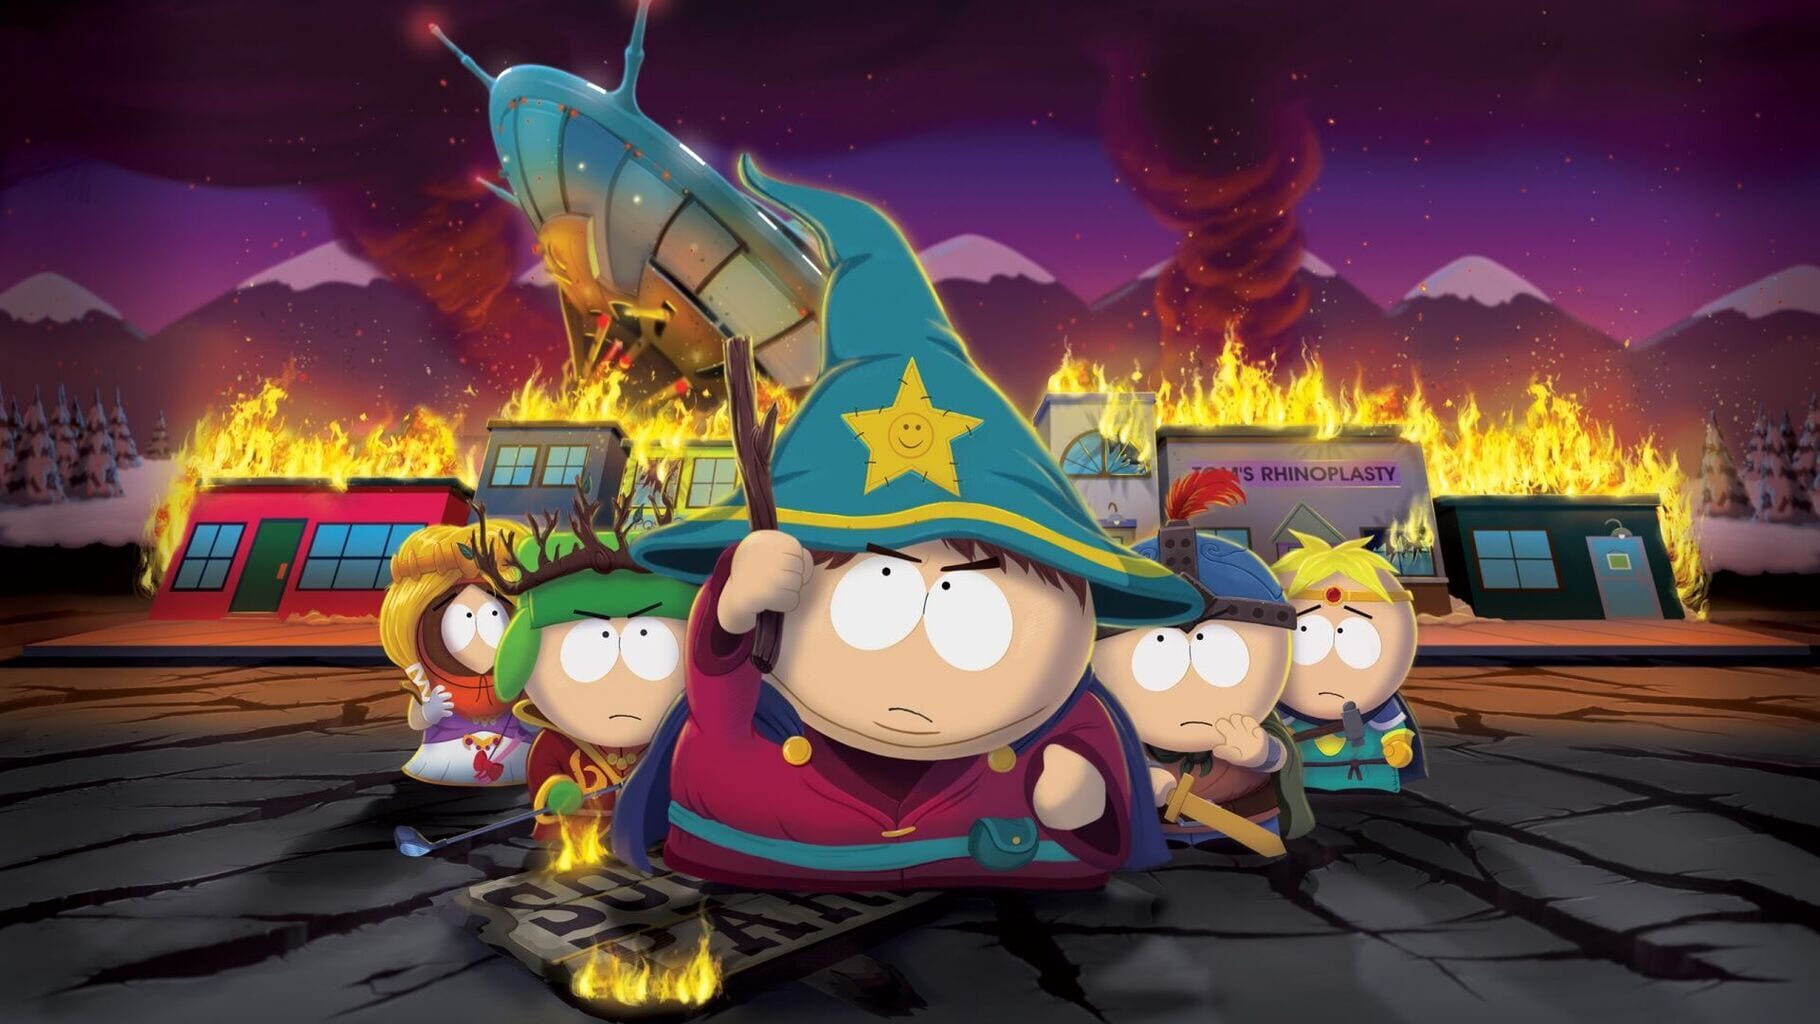 Arte - South Park: The Stick of Truth